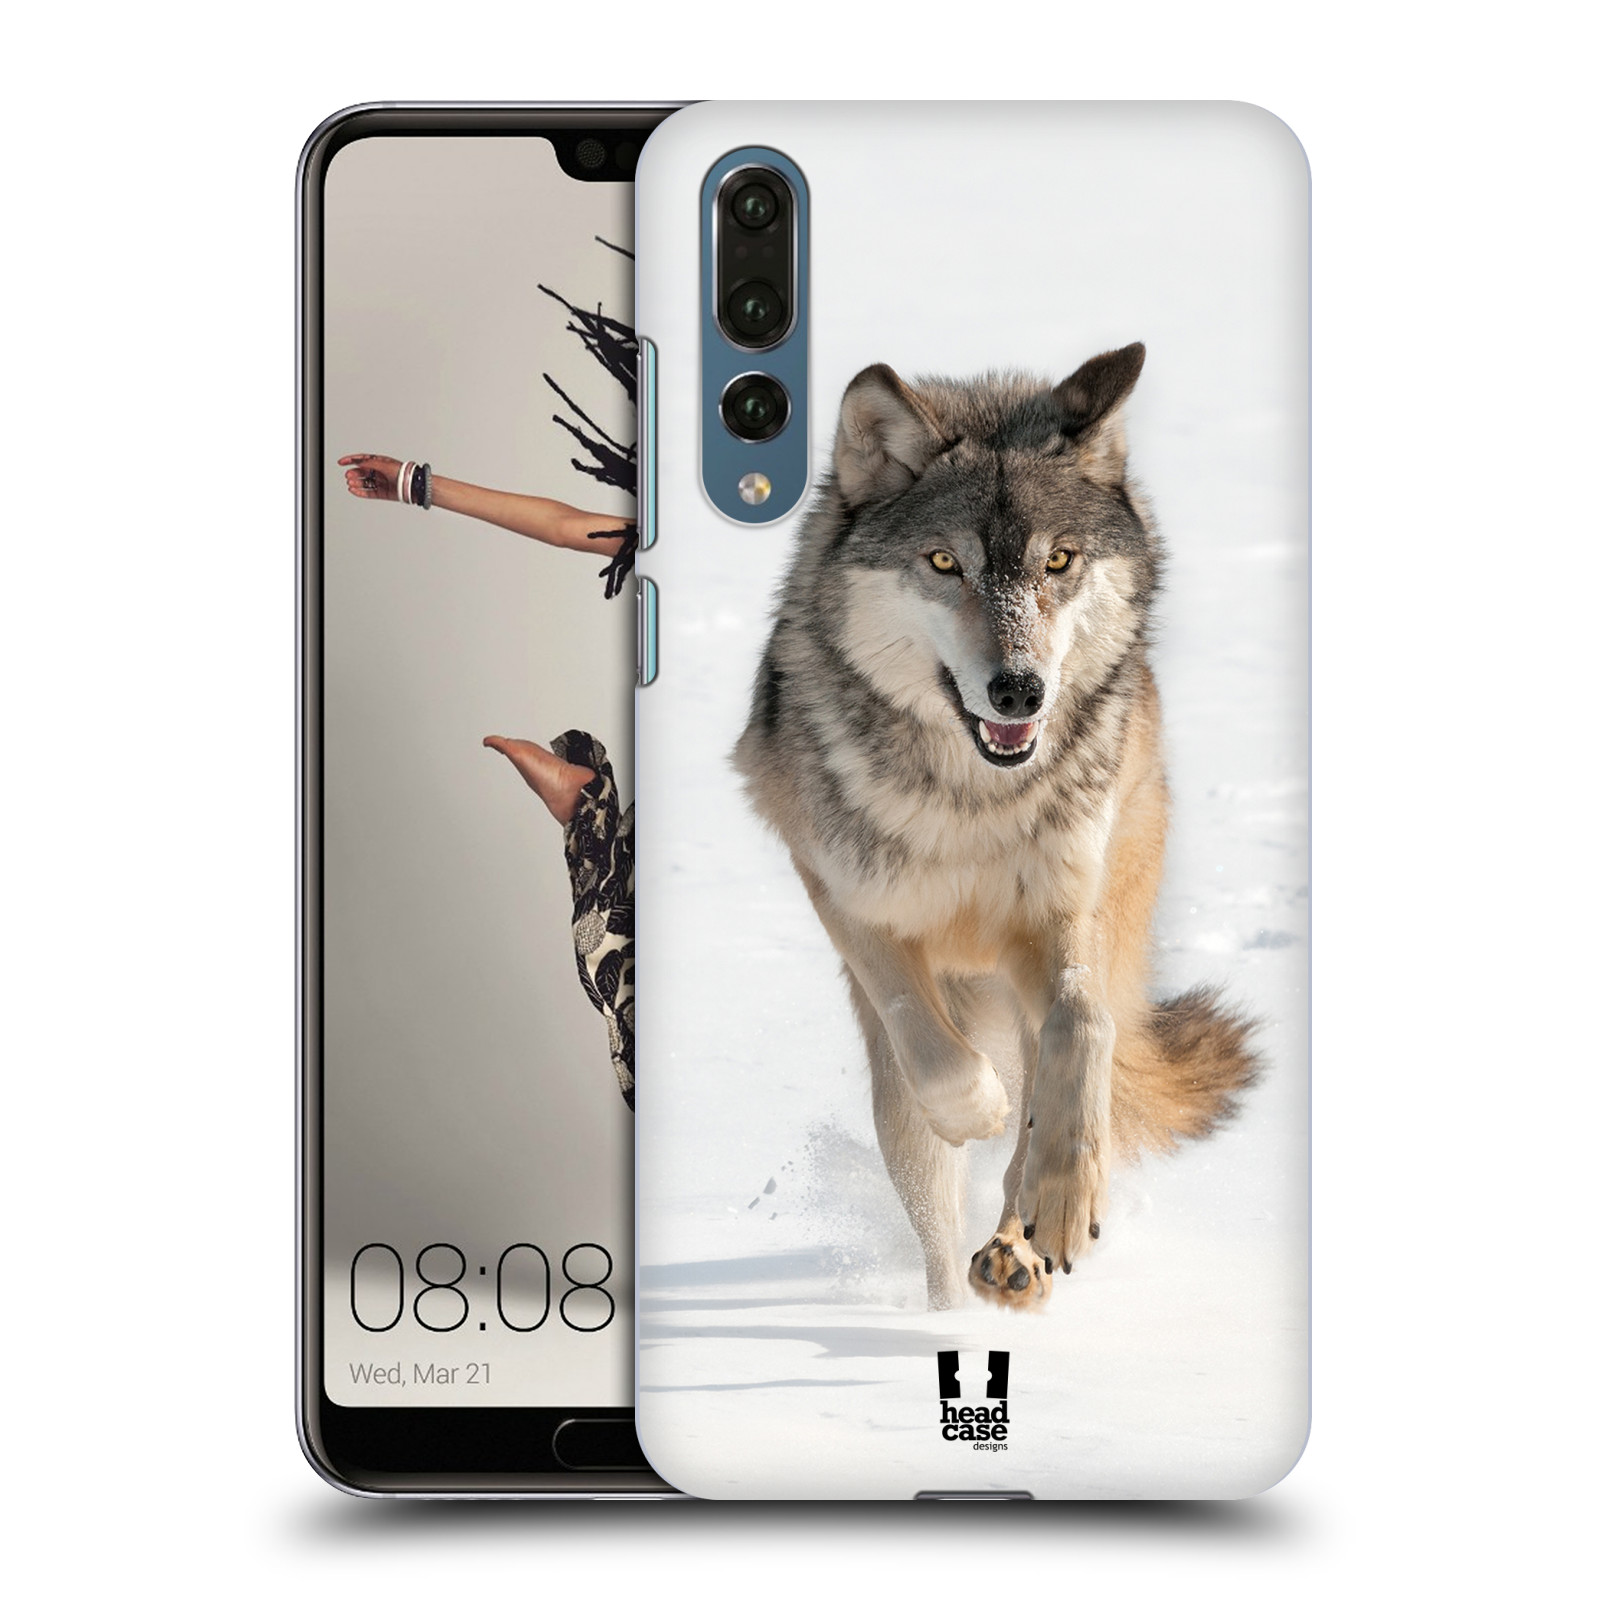 Zadní obal pro mobil Huawei P20 PRO - HEAD CASE - Svět zvířat divoký vlk